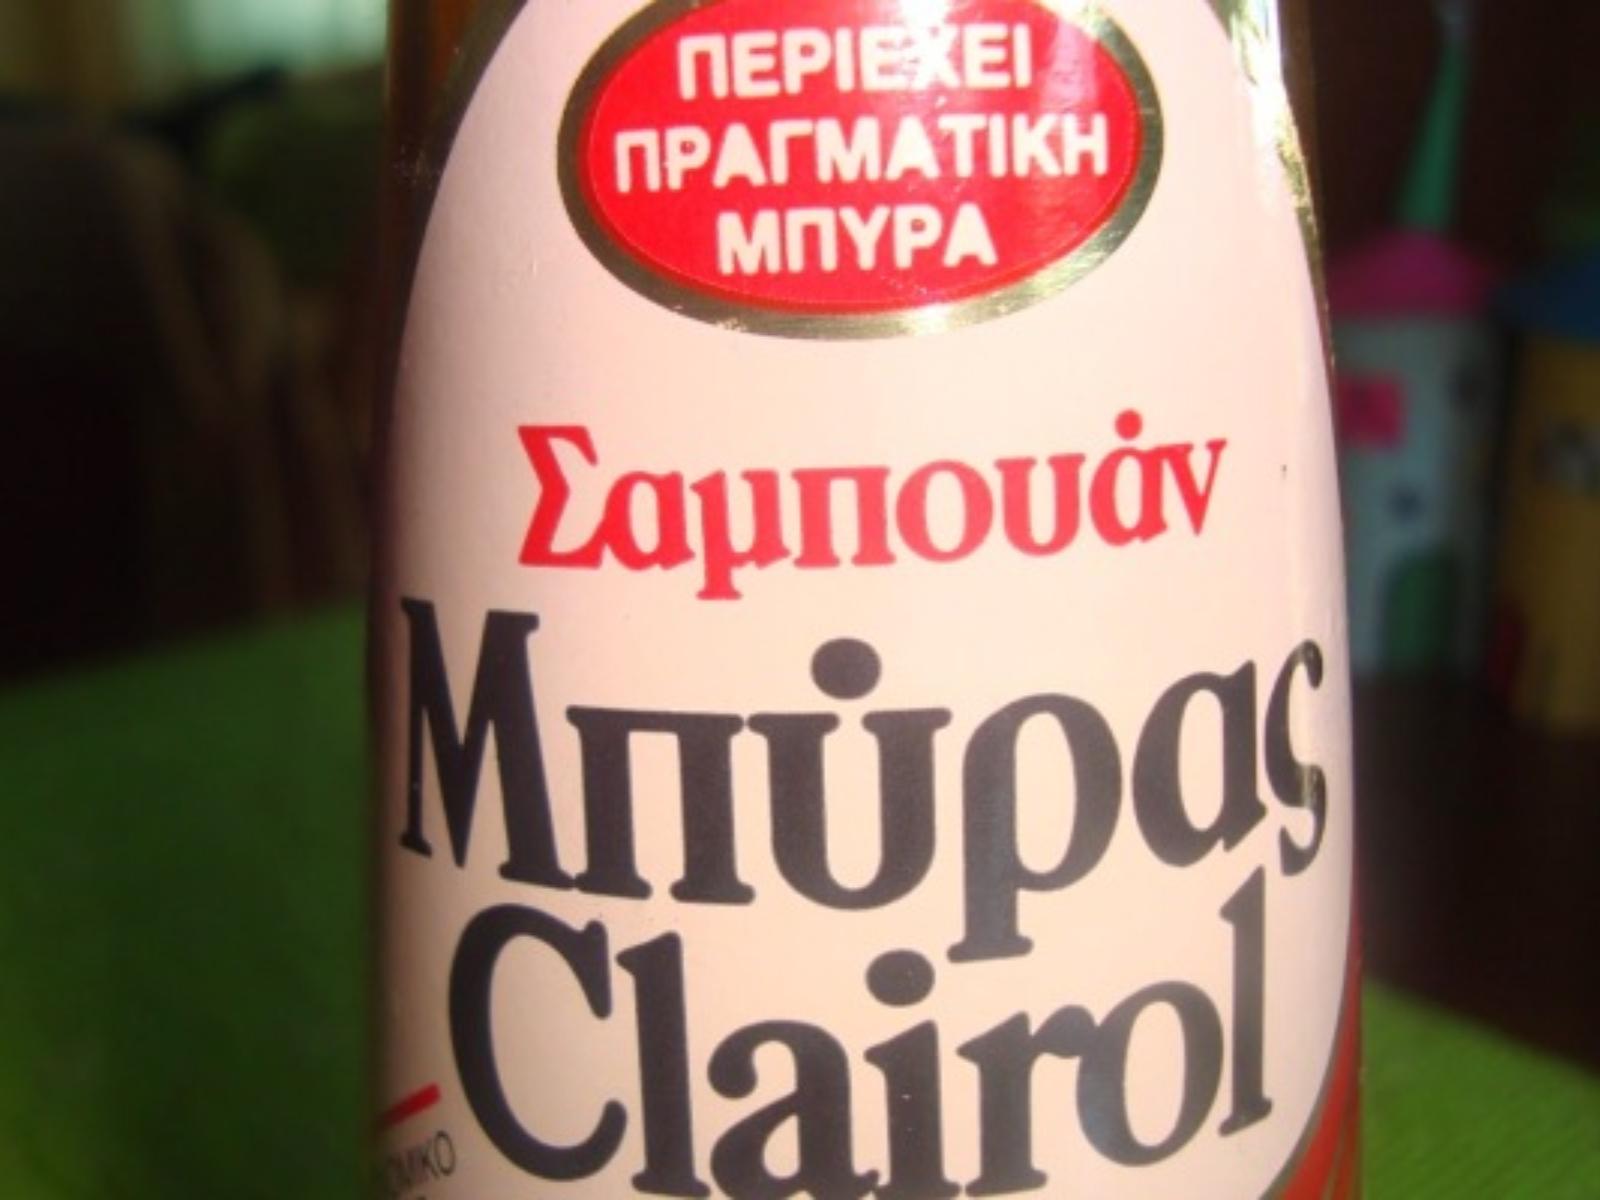 μην-την-πιείτε-λουστείτε-παλιές-ελληνικές διαφημίσεις-για-σαμπουάν μπύρας-